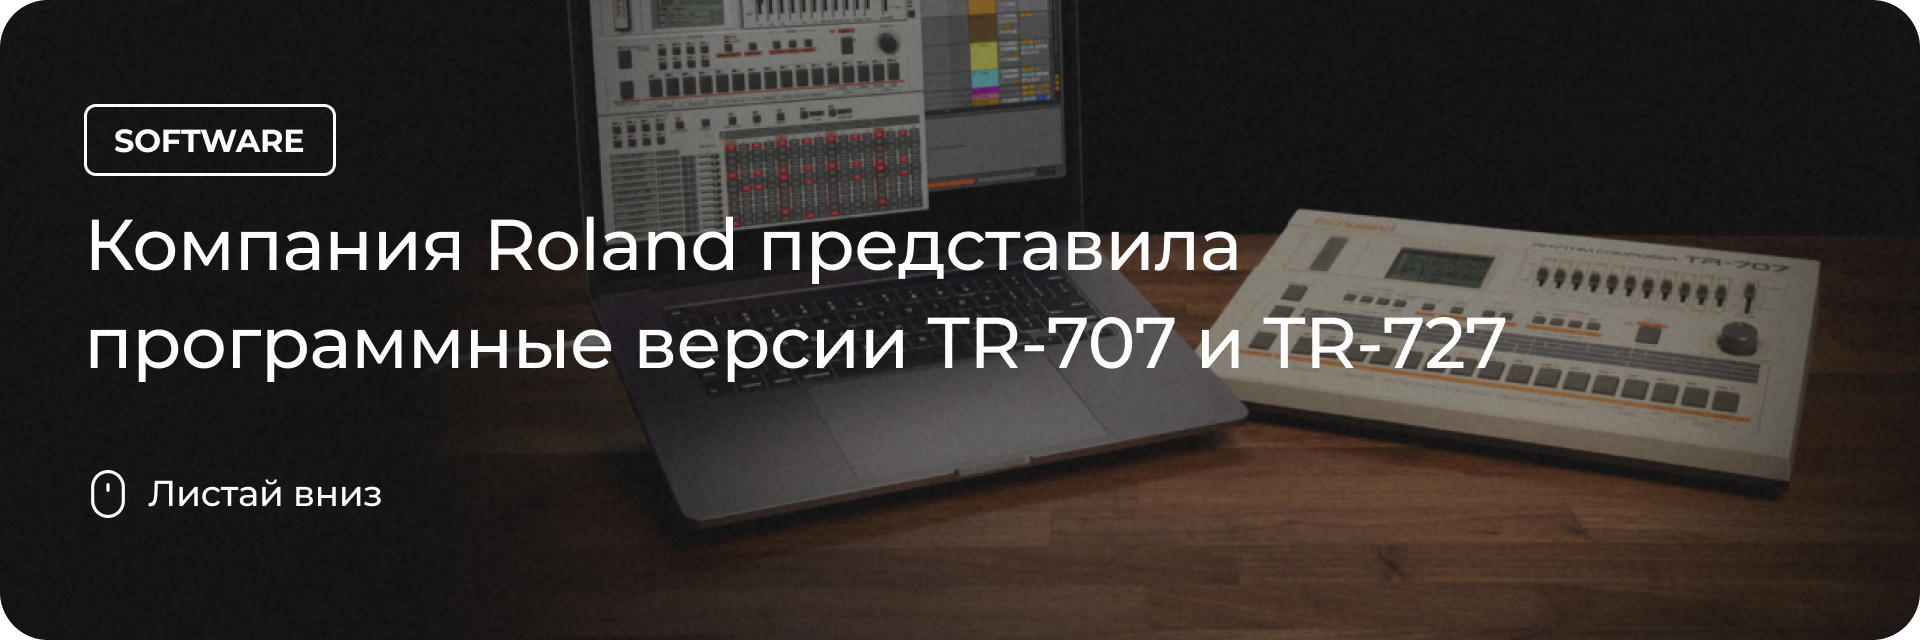 Программные версии TR-707 и TR-727